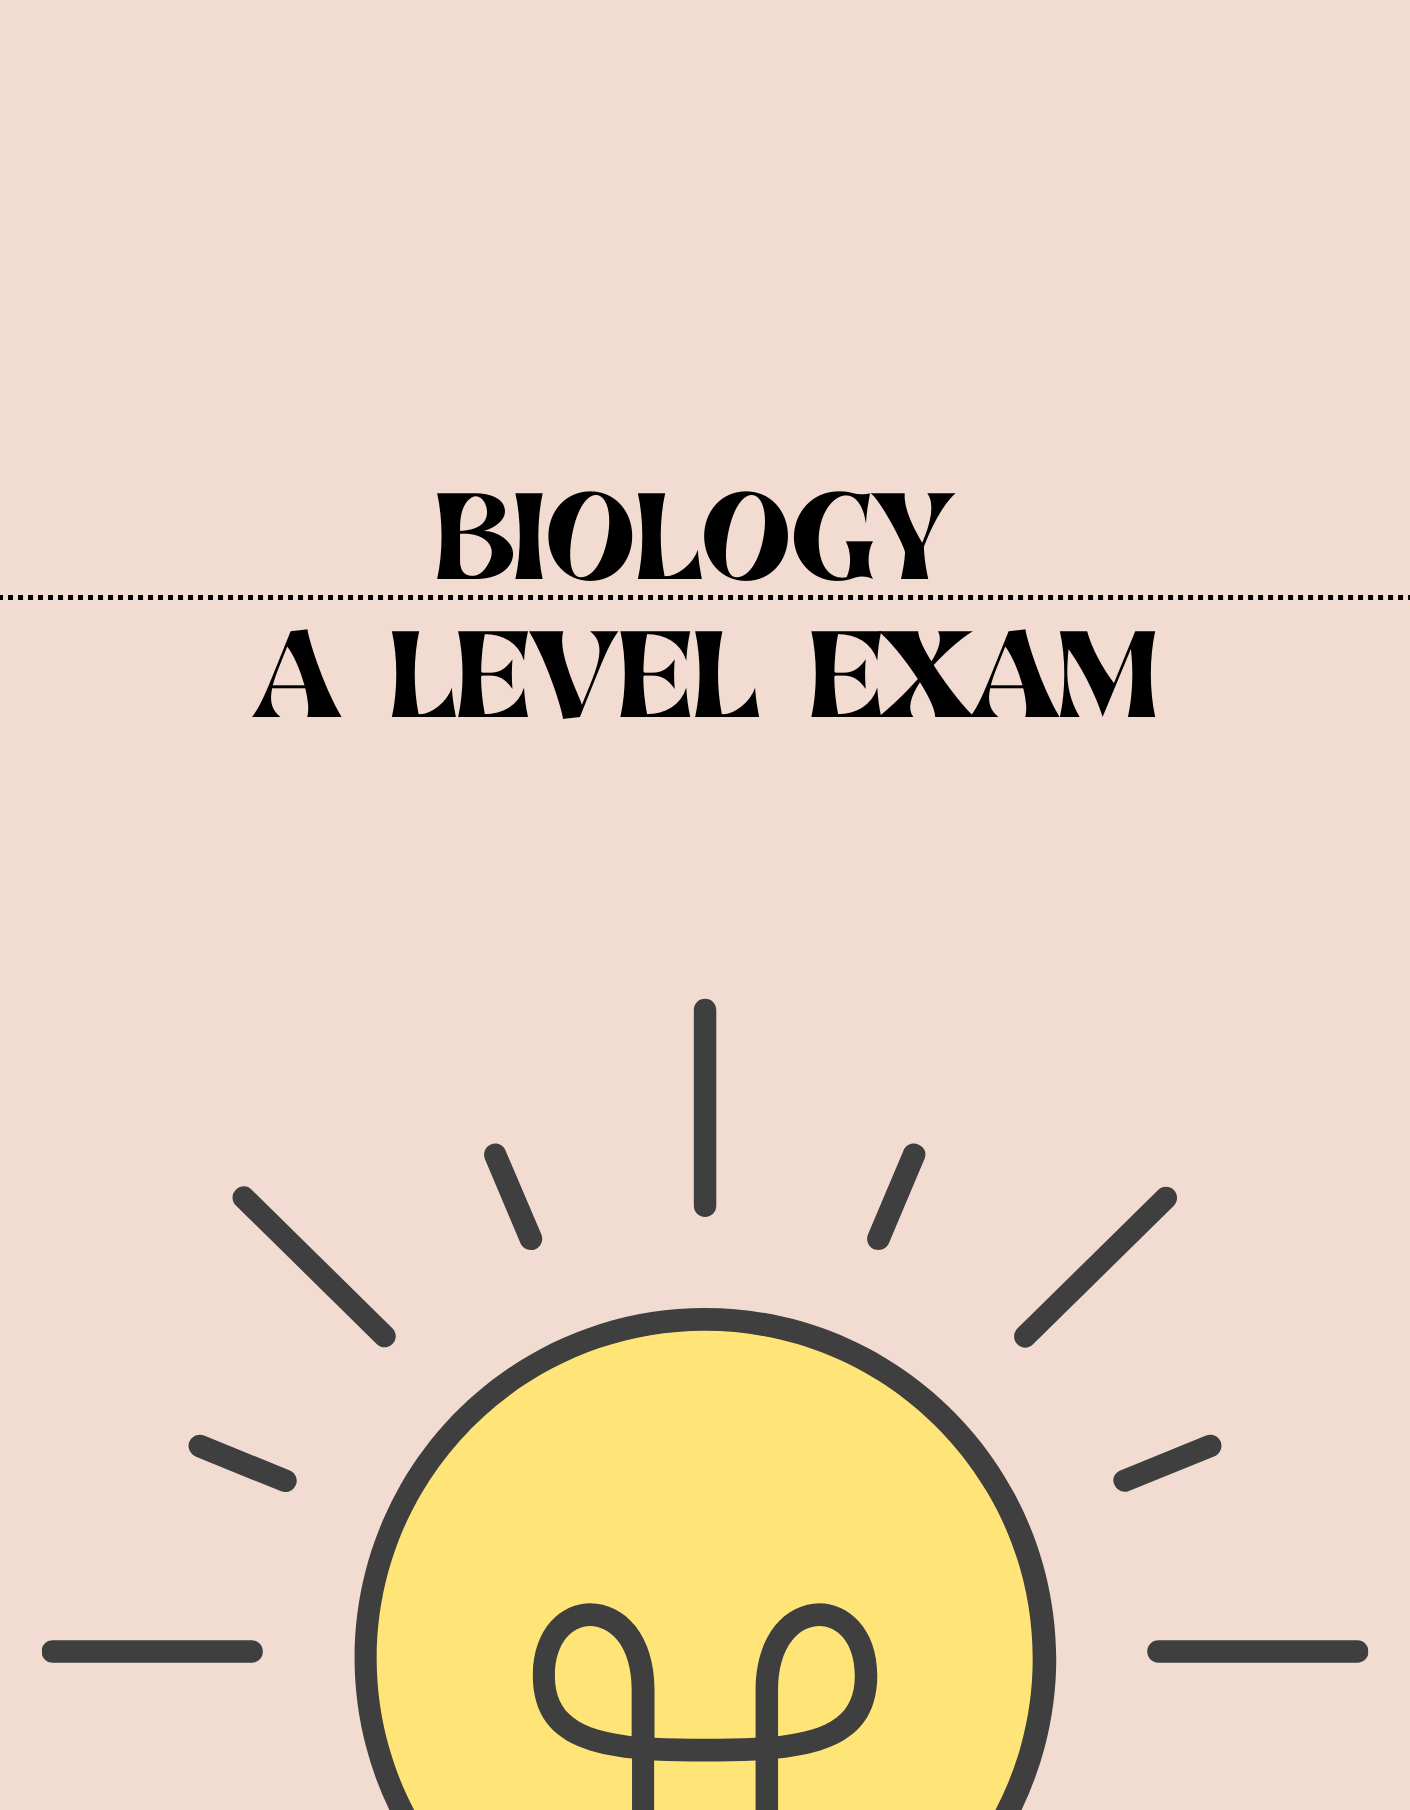 A Level - Biology Exam - Exam Centre Birmingham